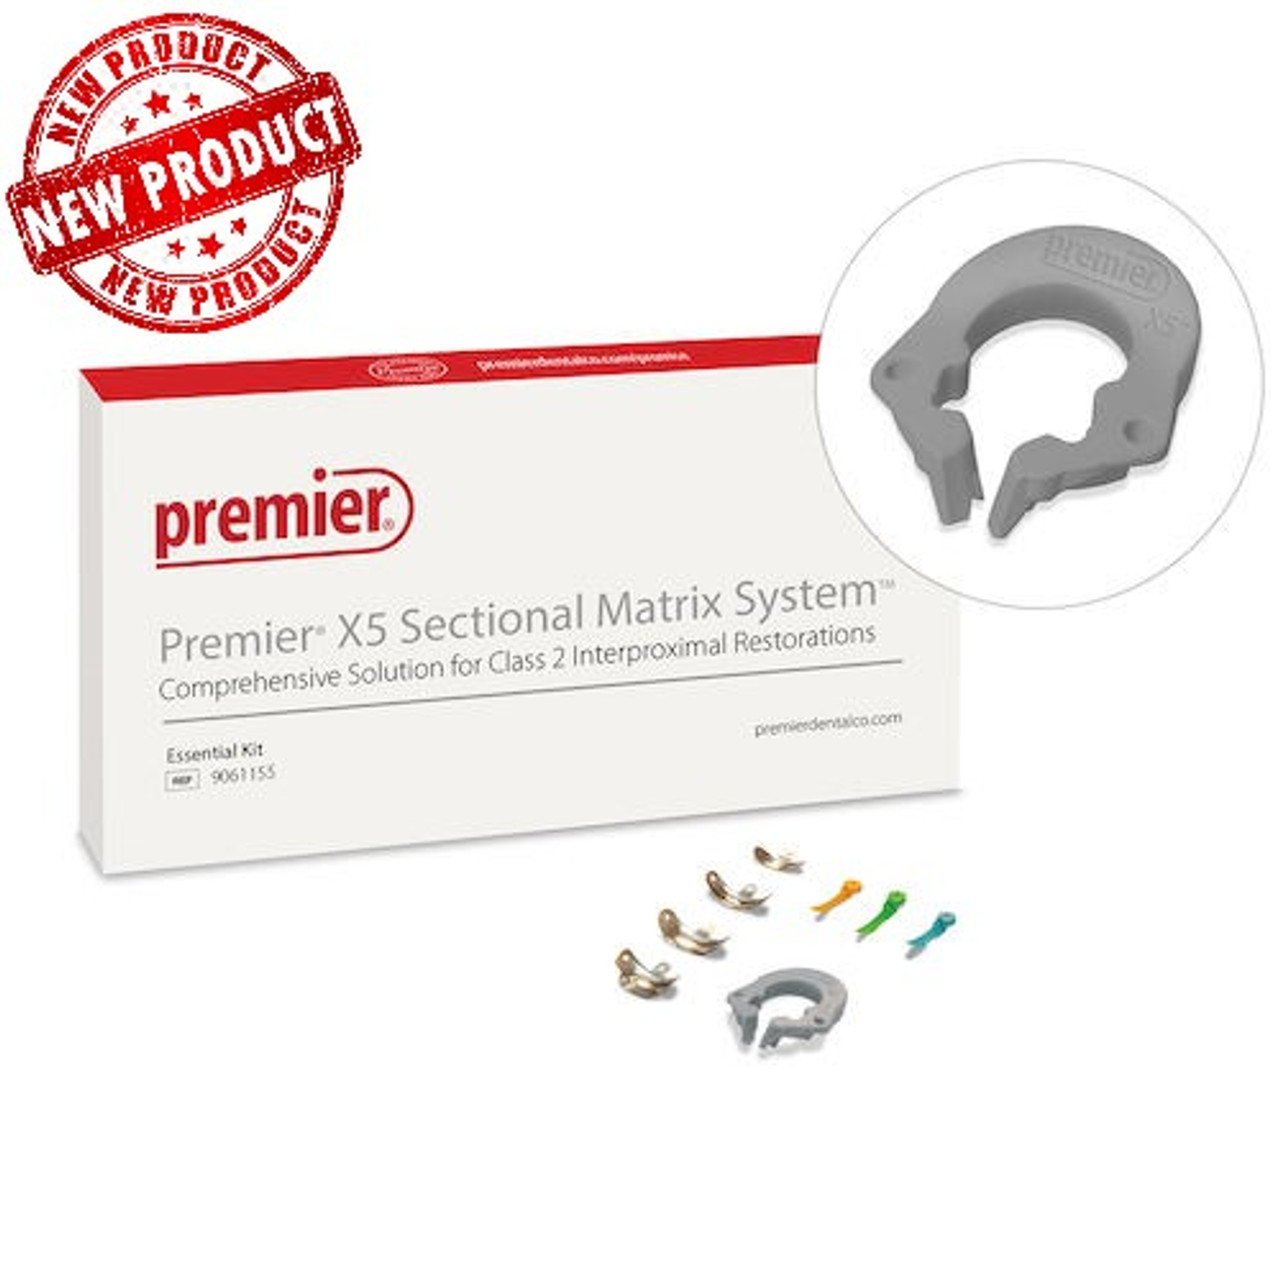 Premier X5 Sectional Matrix System - Premier X5 Sectional Matrix System Essential Kit ,9061155